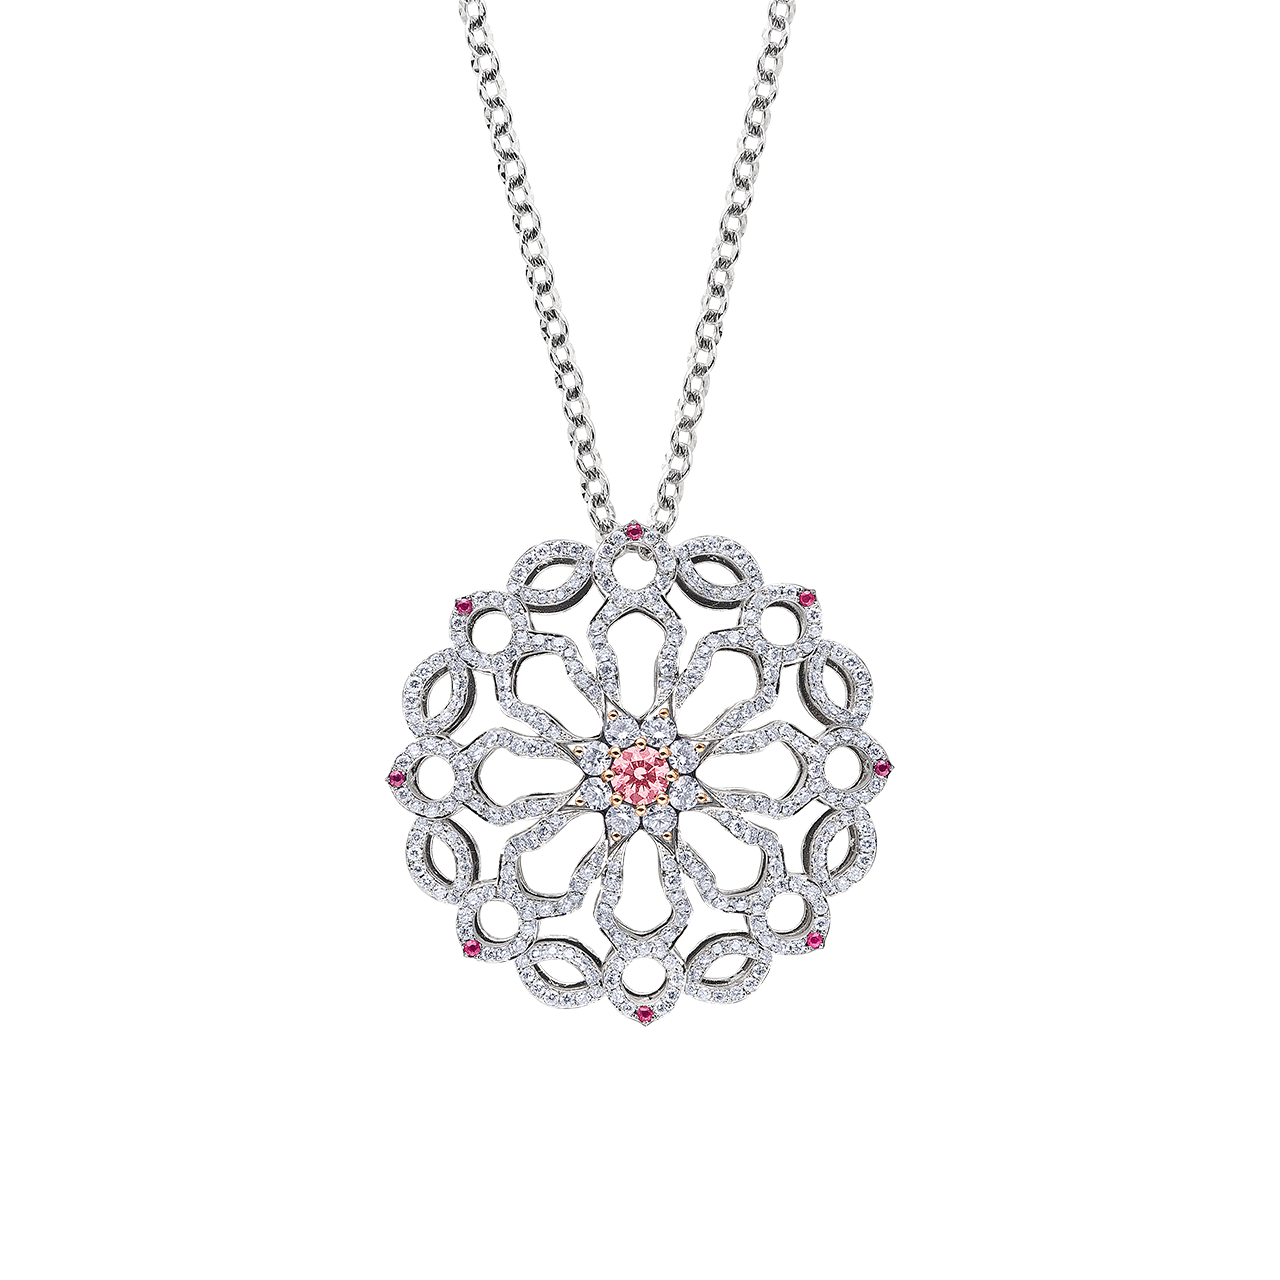 阿蓋爾粉鑽墜鍊 0.26克拉
Pink Diamond from Argyle Mine
and Diamond Pendant